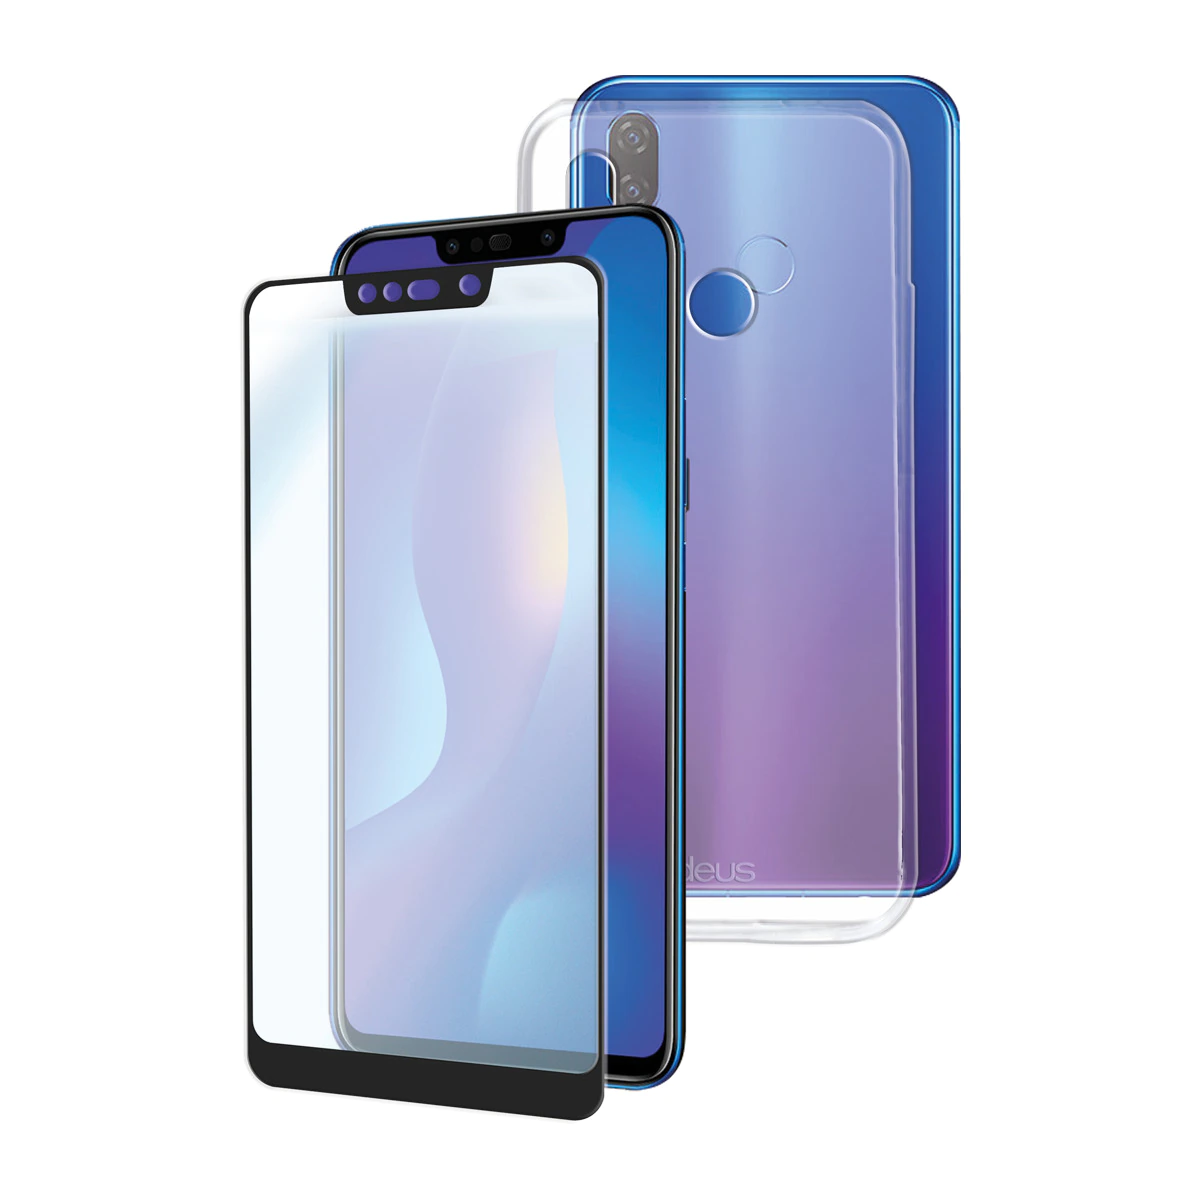 Pack carcasa transparente y protector de vidrio Ideus para Huawei Psmart+